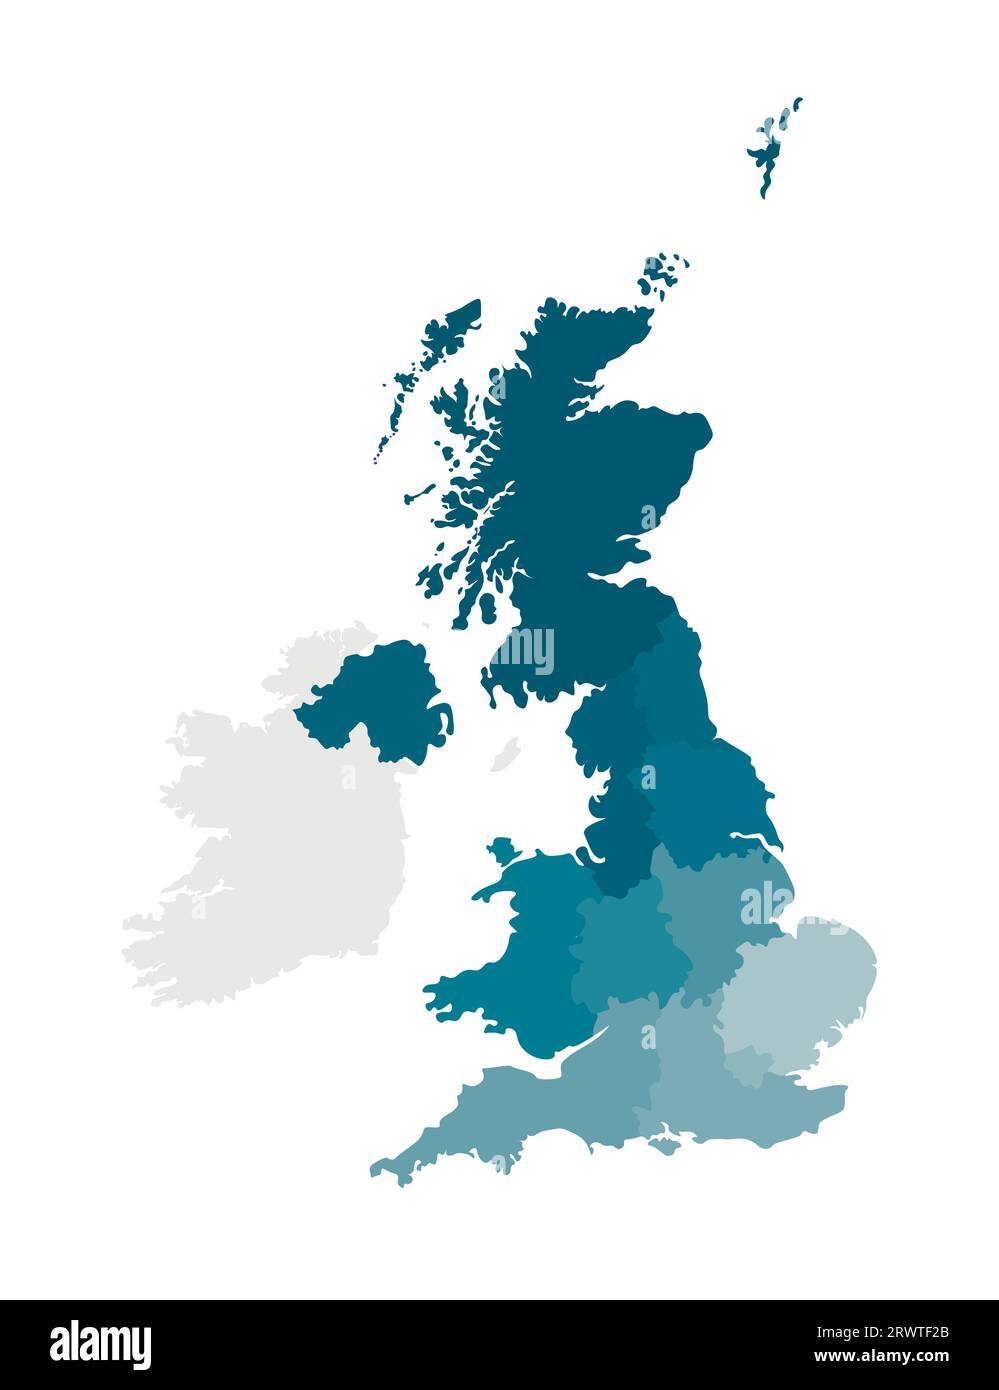 Illustration vectorielle isolée d'une carte administrative simplifiée du Royaume-Uni de Grande-Bretagne et d'Irlande du Nord. Frontières des régions. Col Illustration de Vecteur